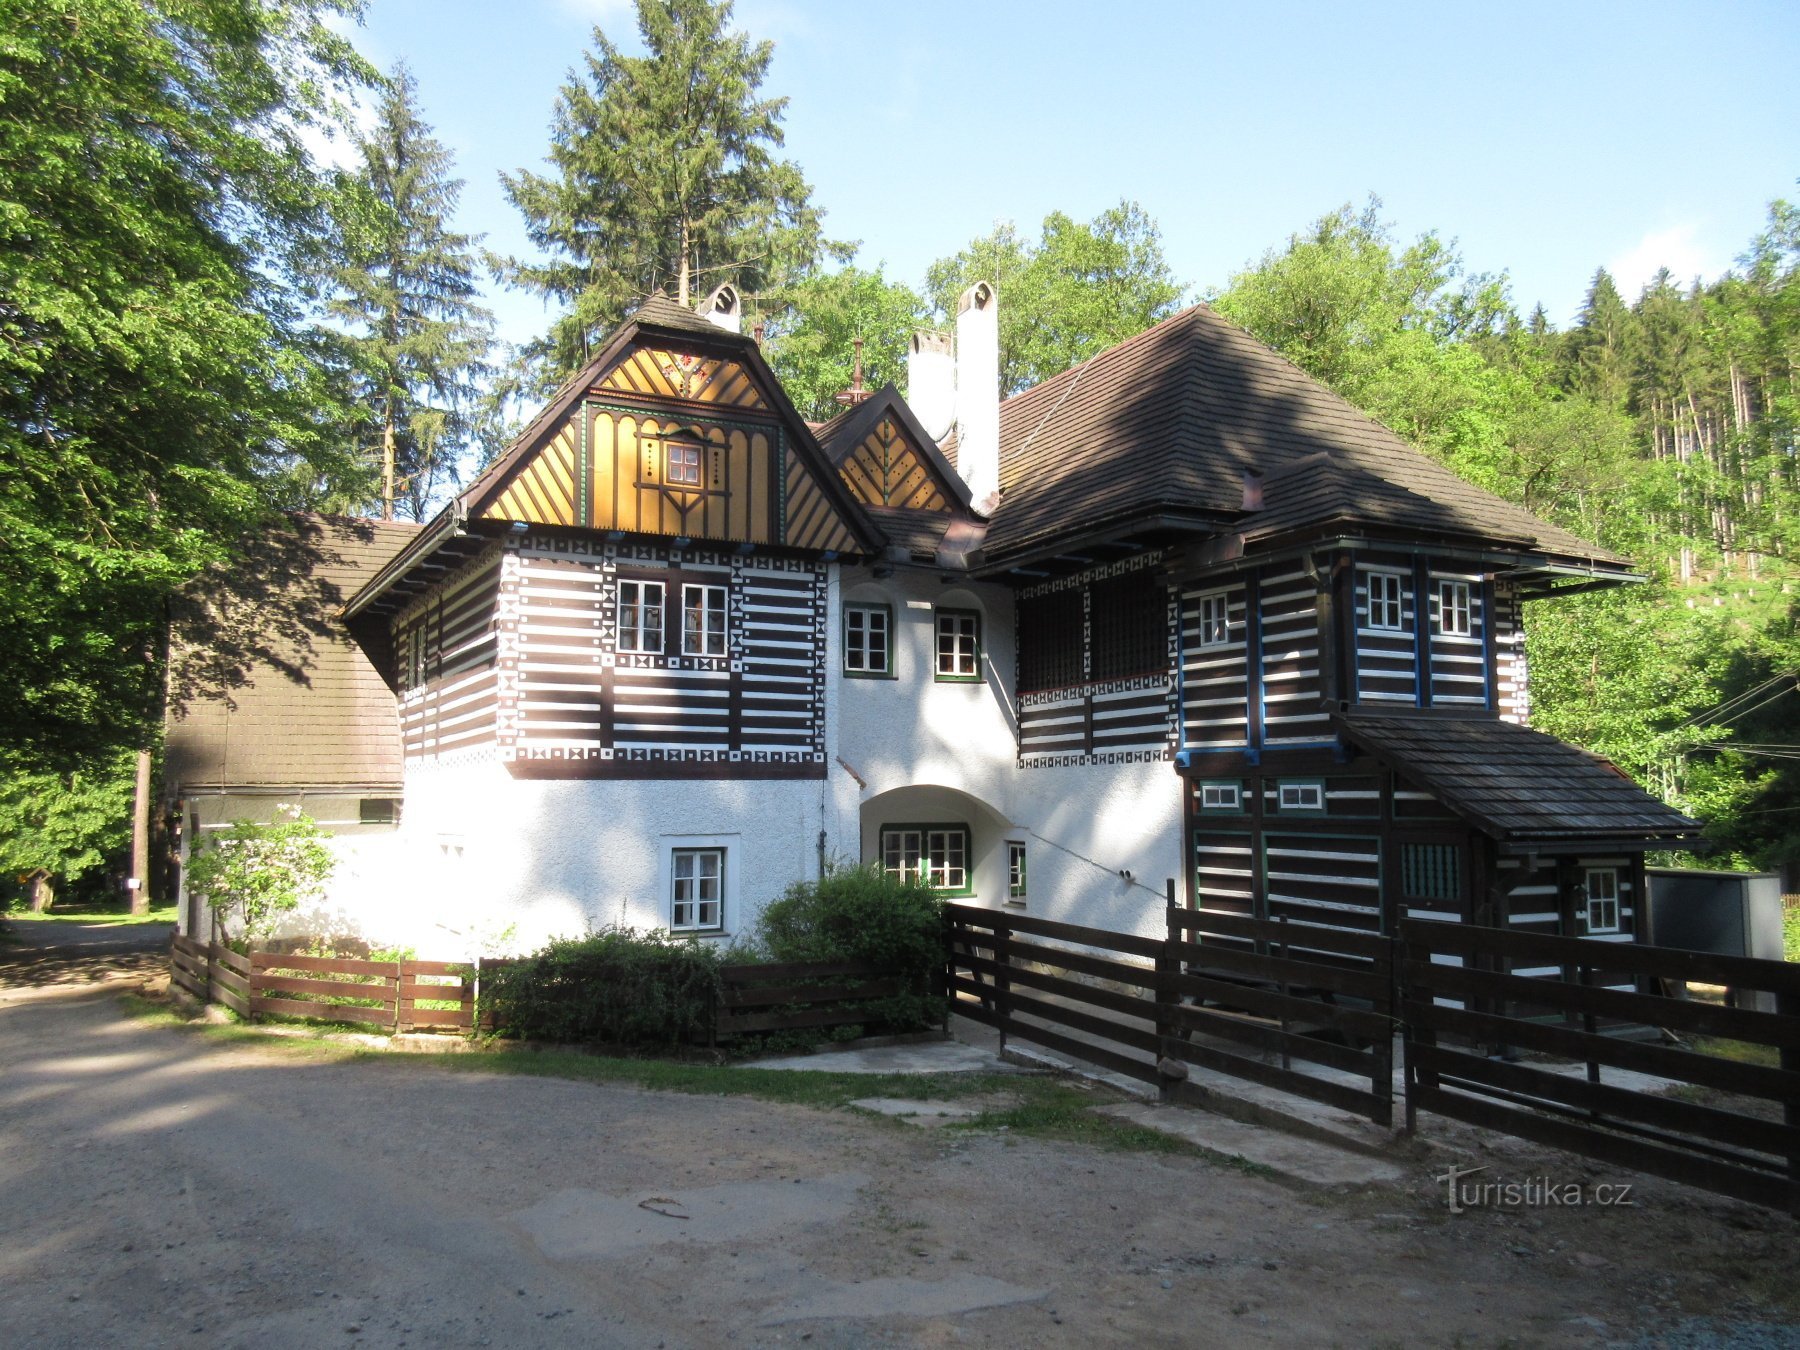 Bartňs hyggelige hus fra øst